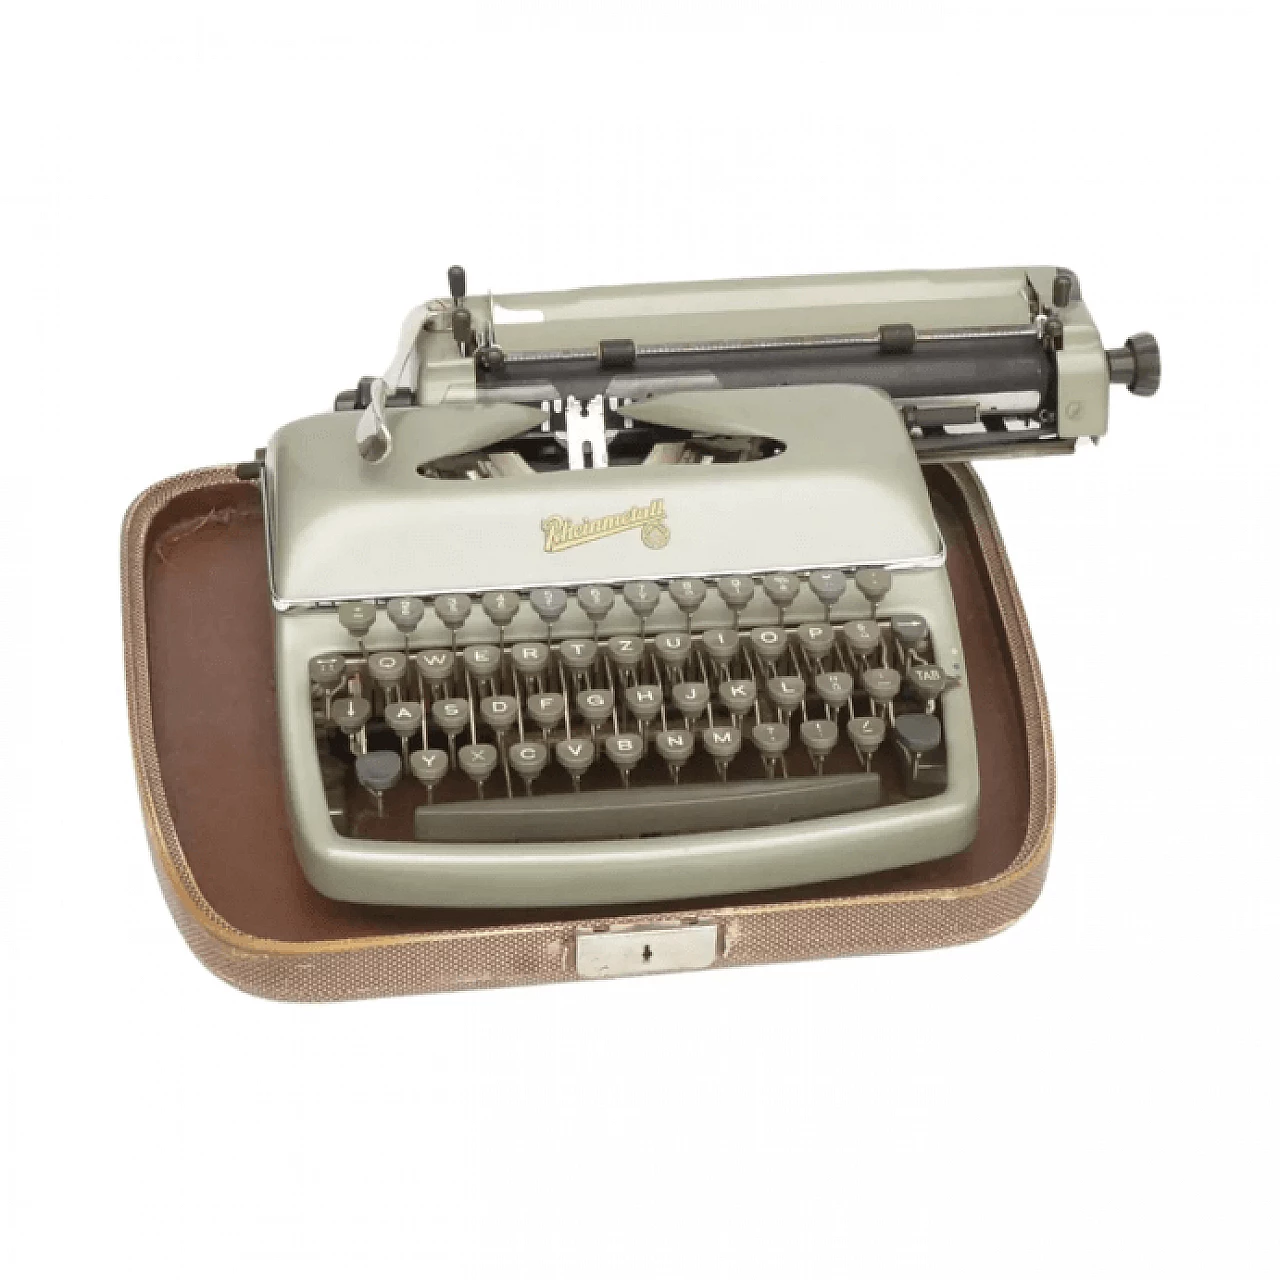 Rheinmetall typewriter model KsT, 1950s 2